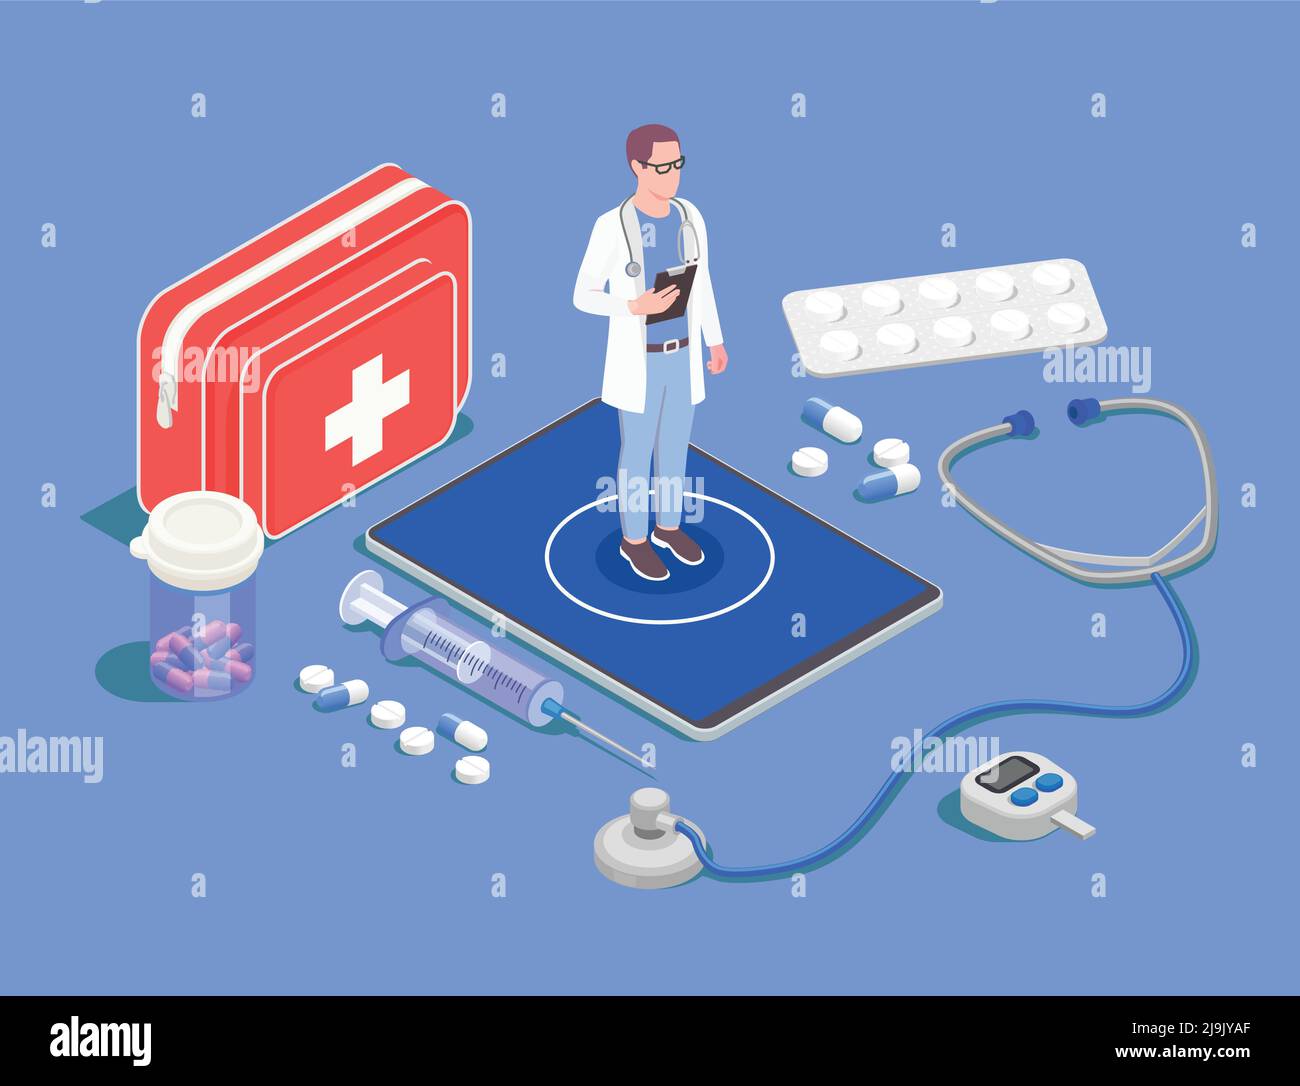 Telemedizinische digitale Gesundheit isometrische Zusammensetzung mit Medikationsbildern von Pillen Und Drogen mit dem Charakter der Arzt Vektor Illustration Stock Vektor